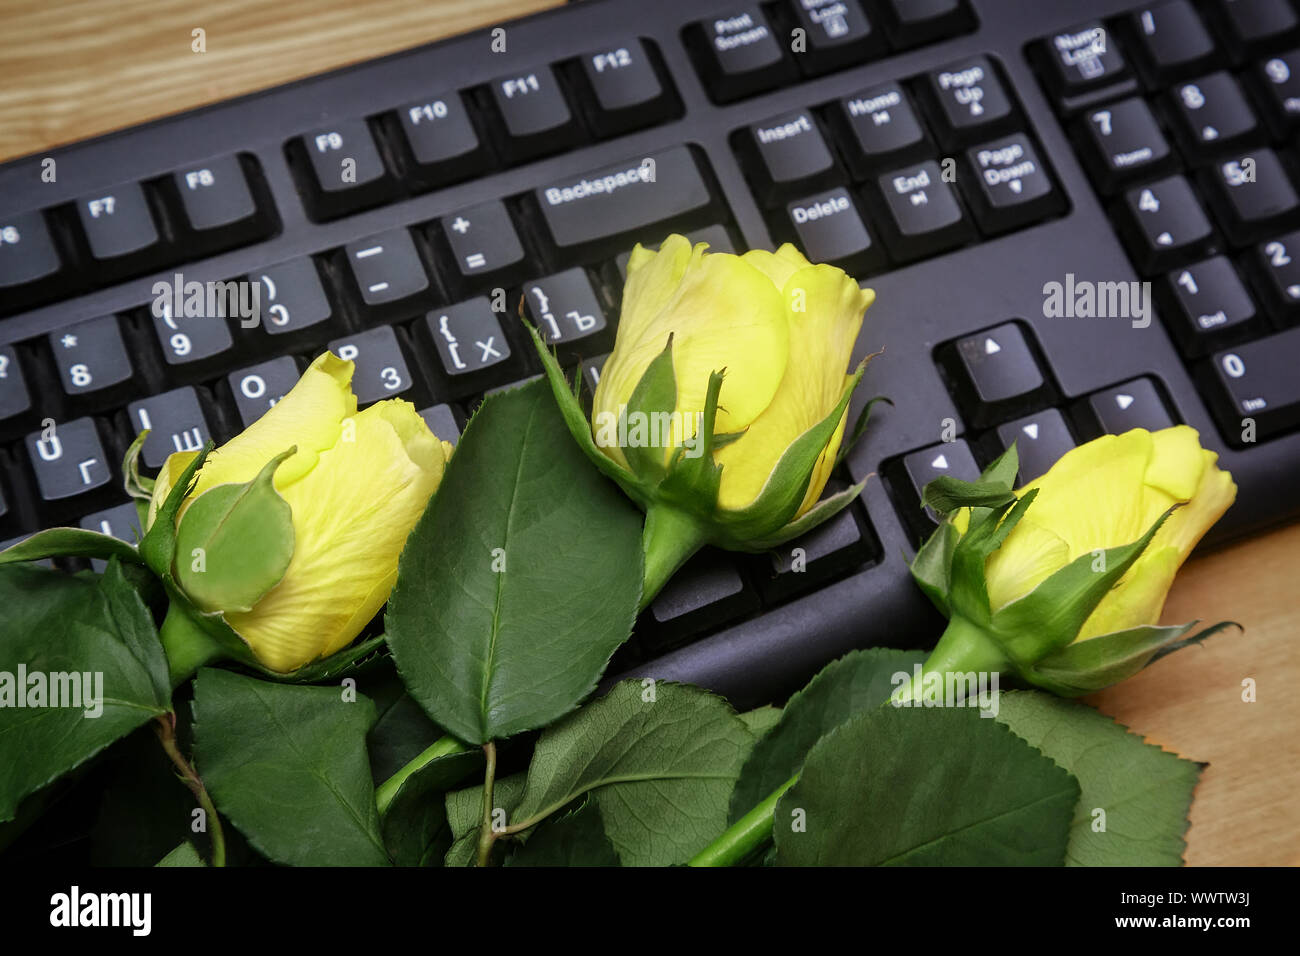 Rosa gialla sulla tastiera del computer. Foto Stock